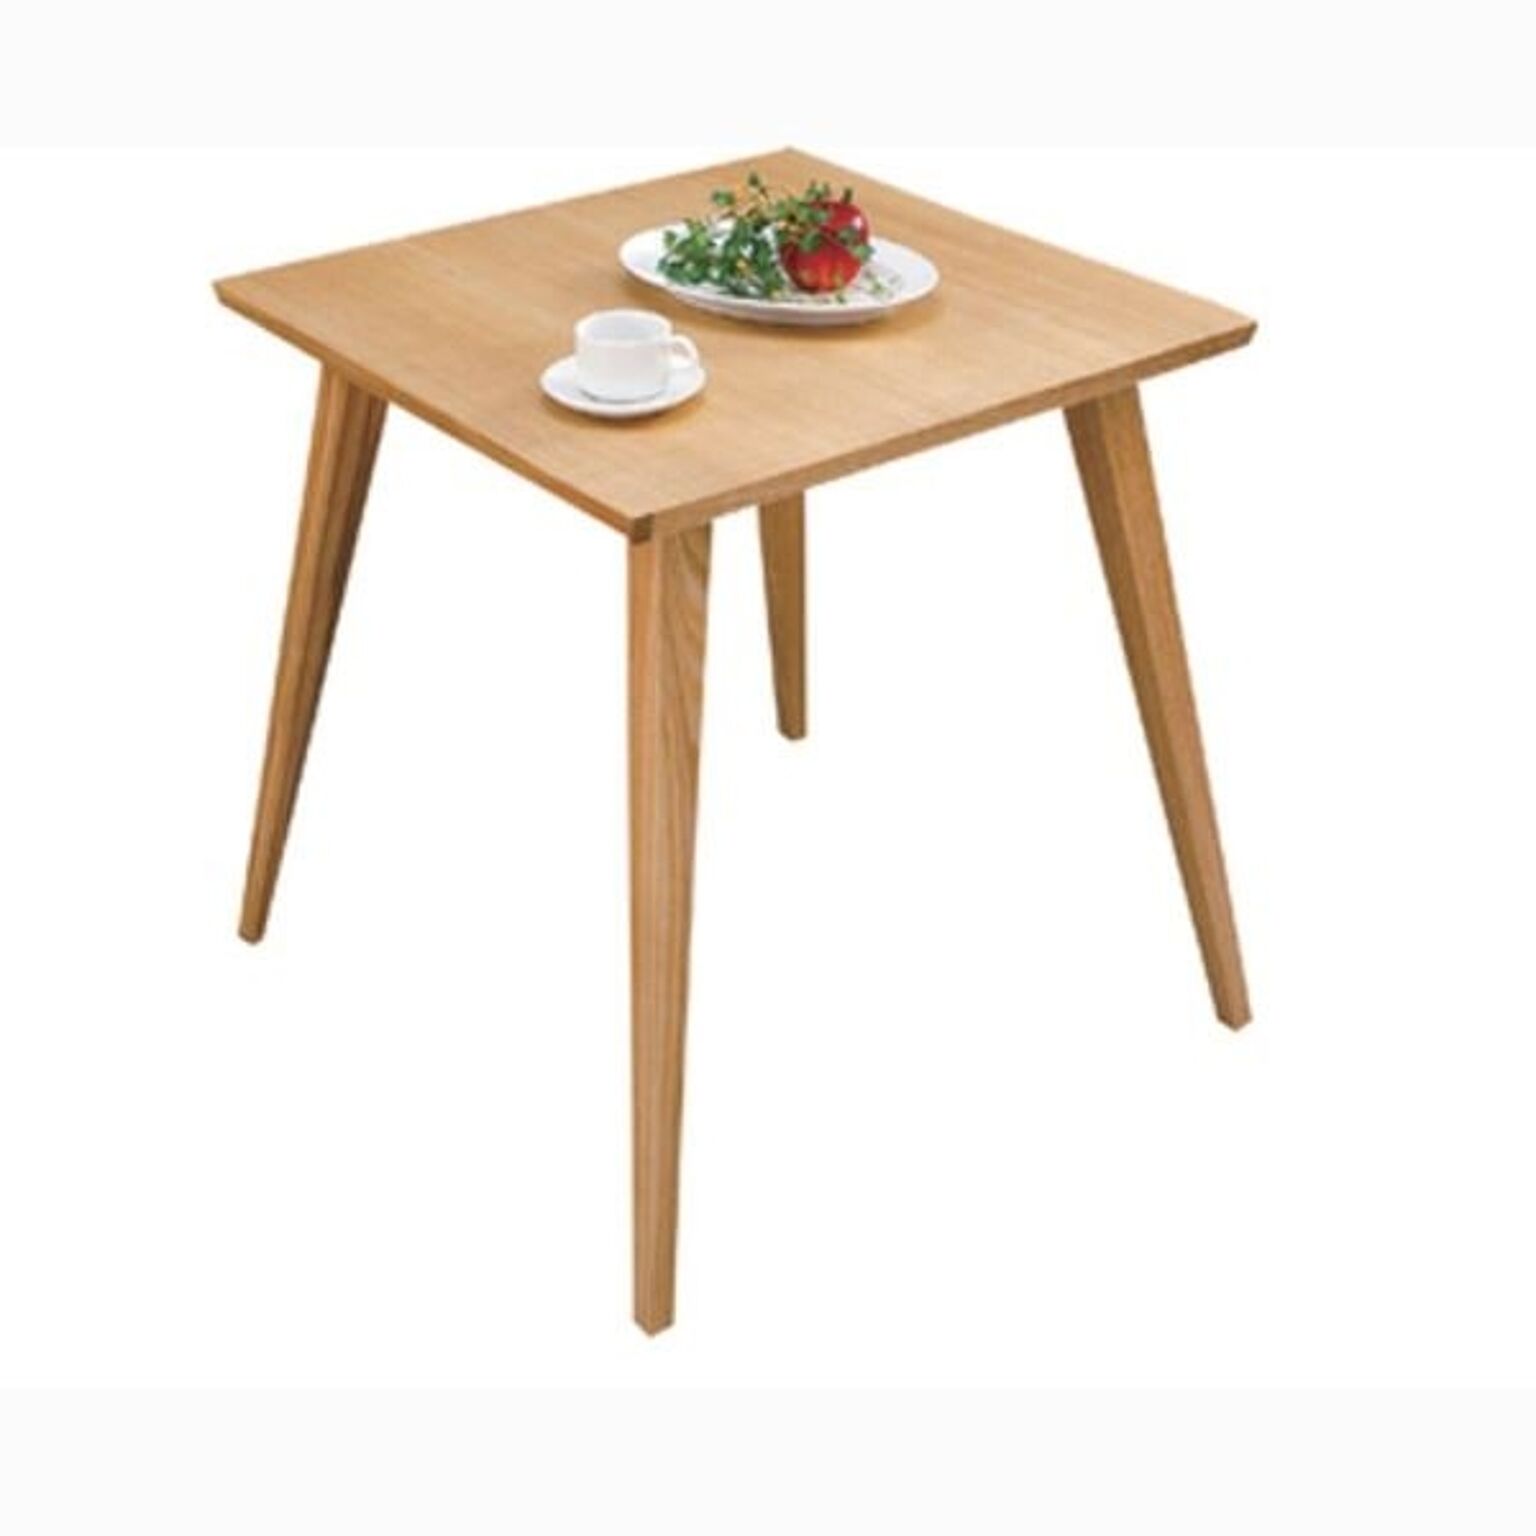 単品ダイニングテーブル バンビ 正方形 木製 2人掛けサイズ CL-786TNA ナチュラル